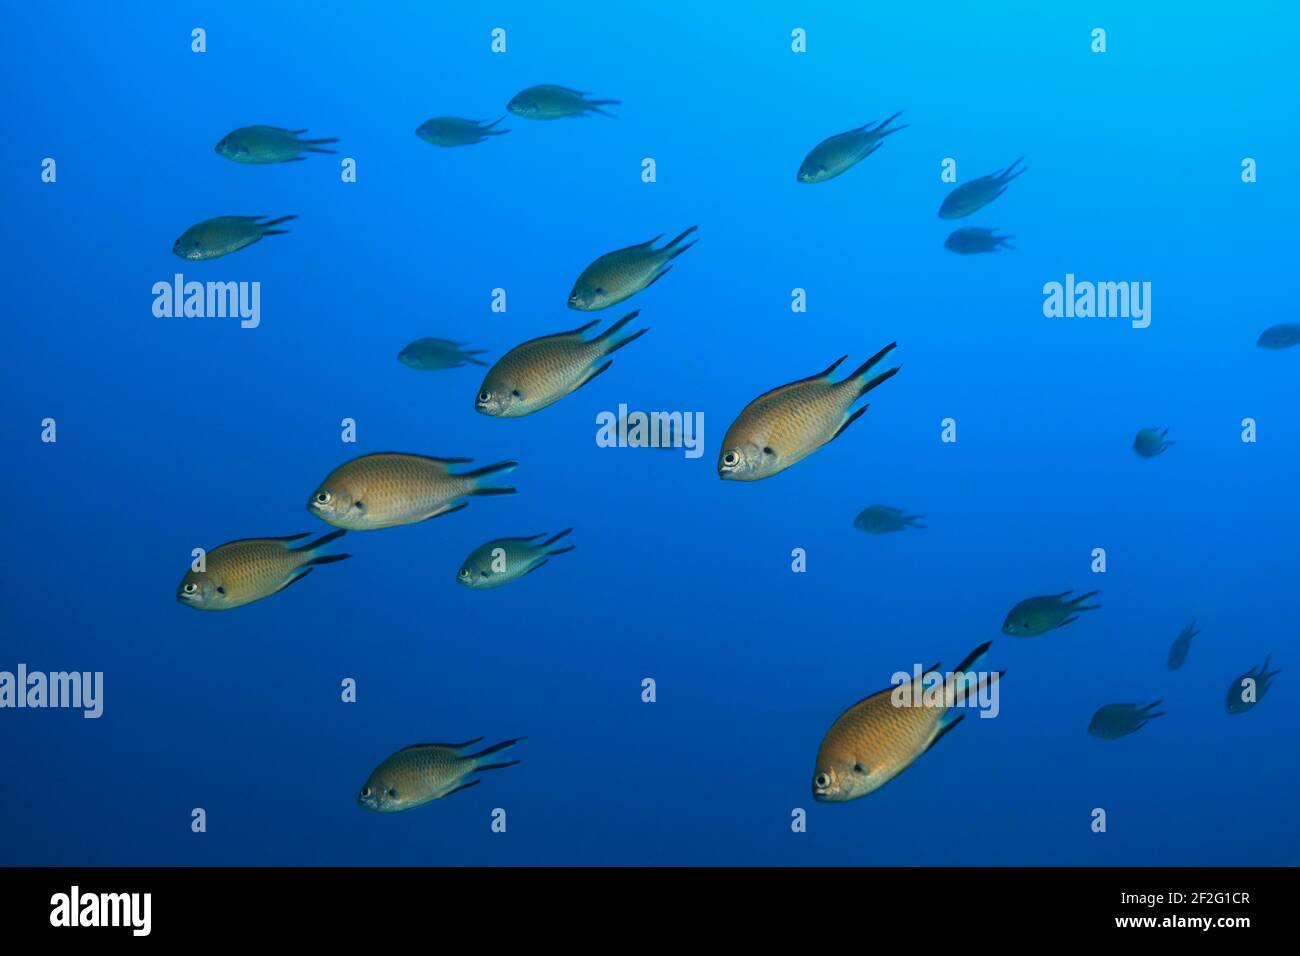 Atlantische Mönchsfische (Chromis limbata), (Kanarische Inseln, Atlantischer Ozean) - Atlantischer Damegoist (Kanarische Inseln, Atlantischer Ozean) Stockfoto